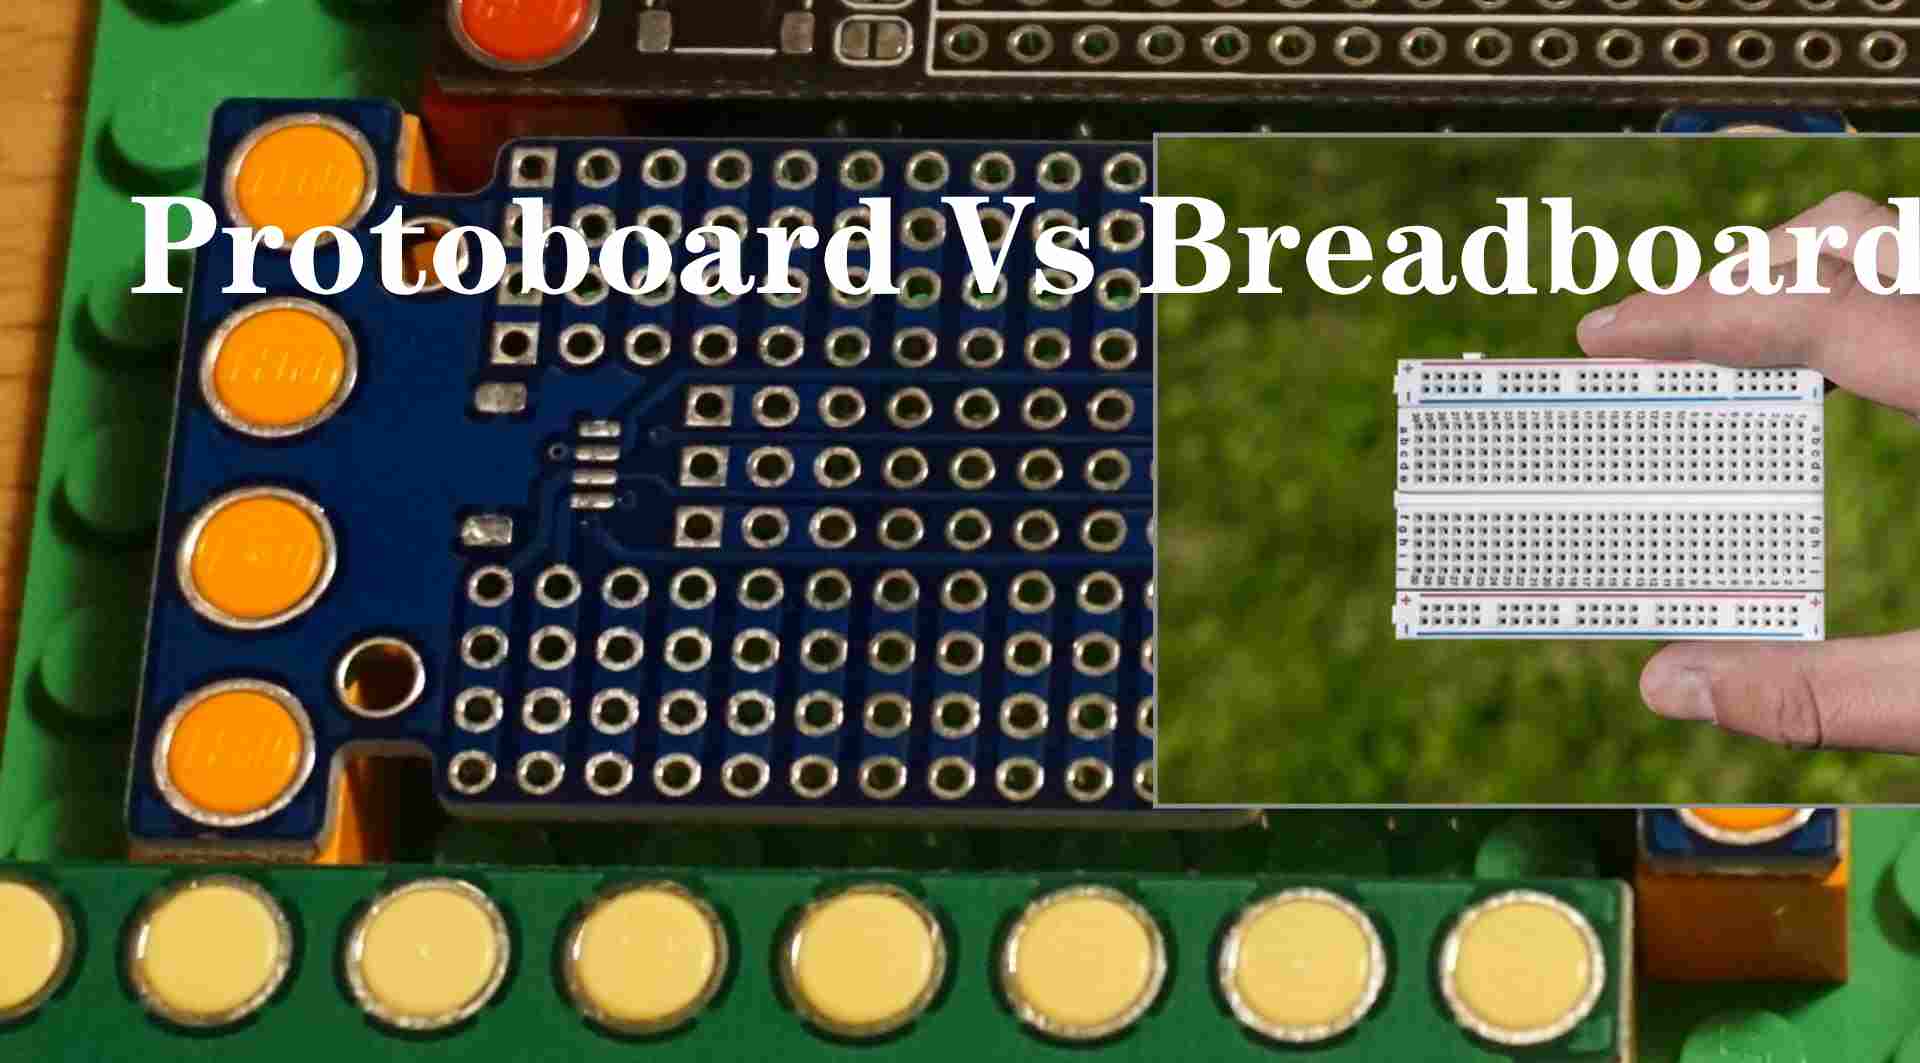 Protoboard-vs-Breadboard-5